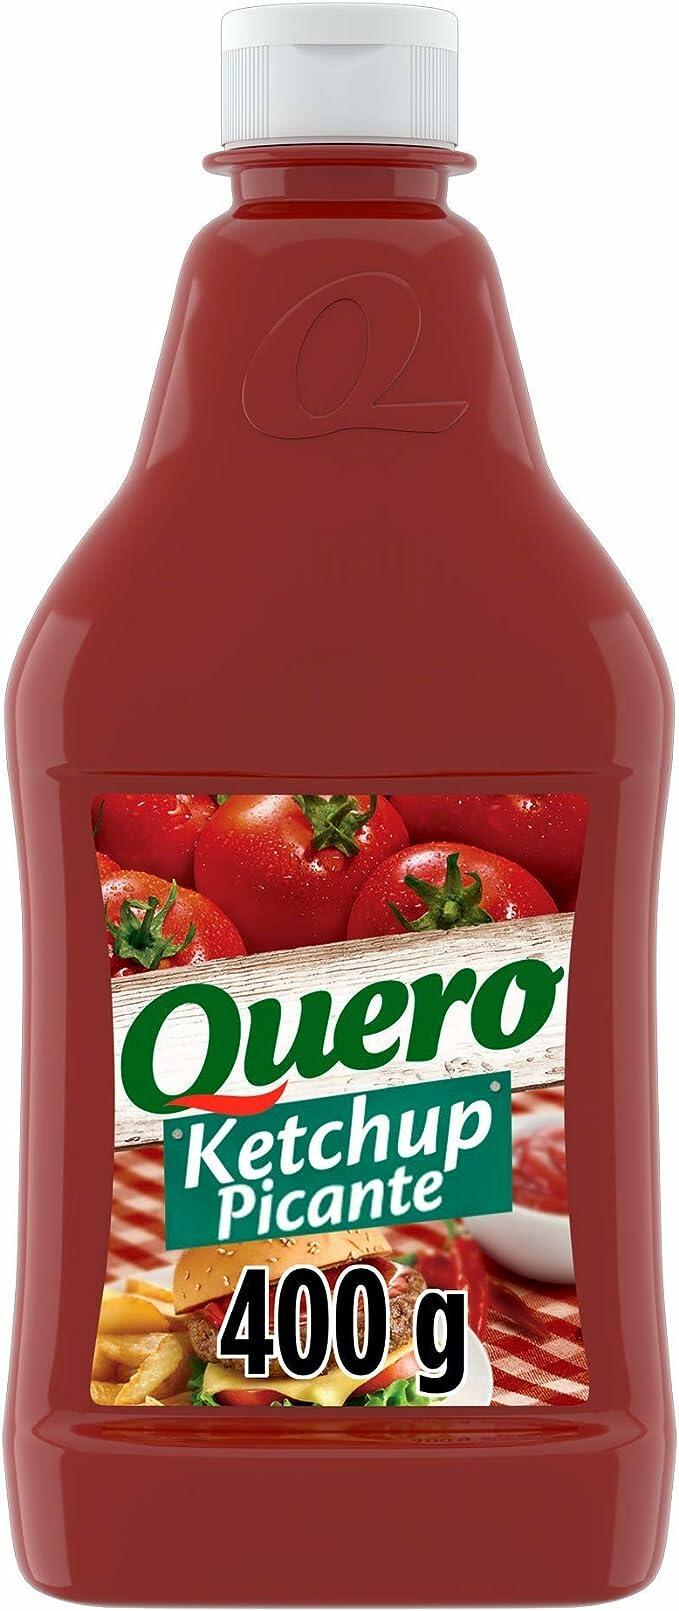 ketchup-quero-picante-400g - Imagem